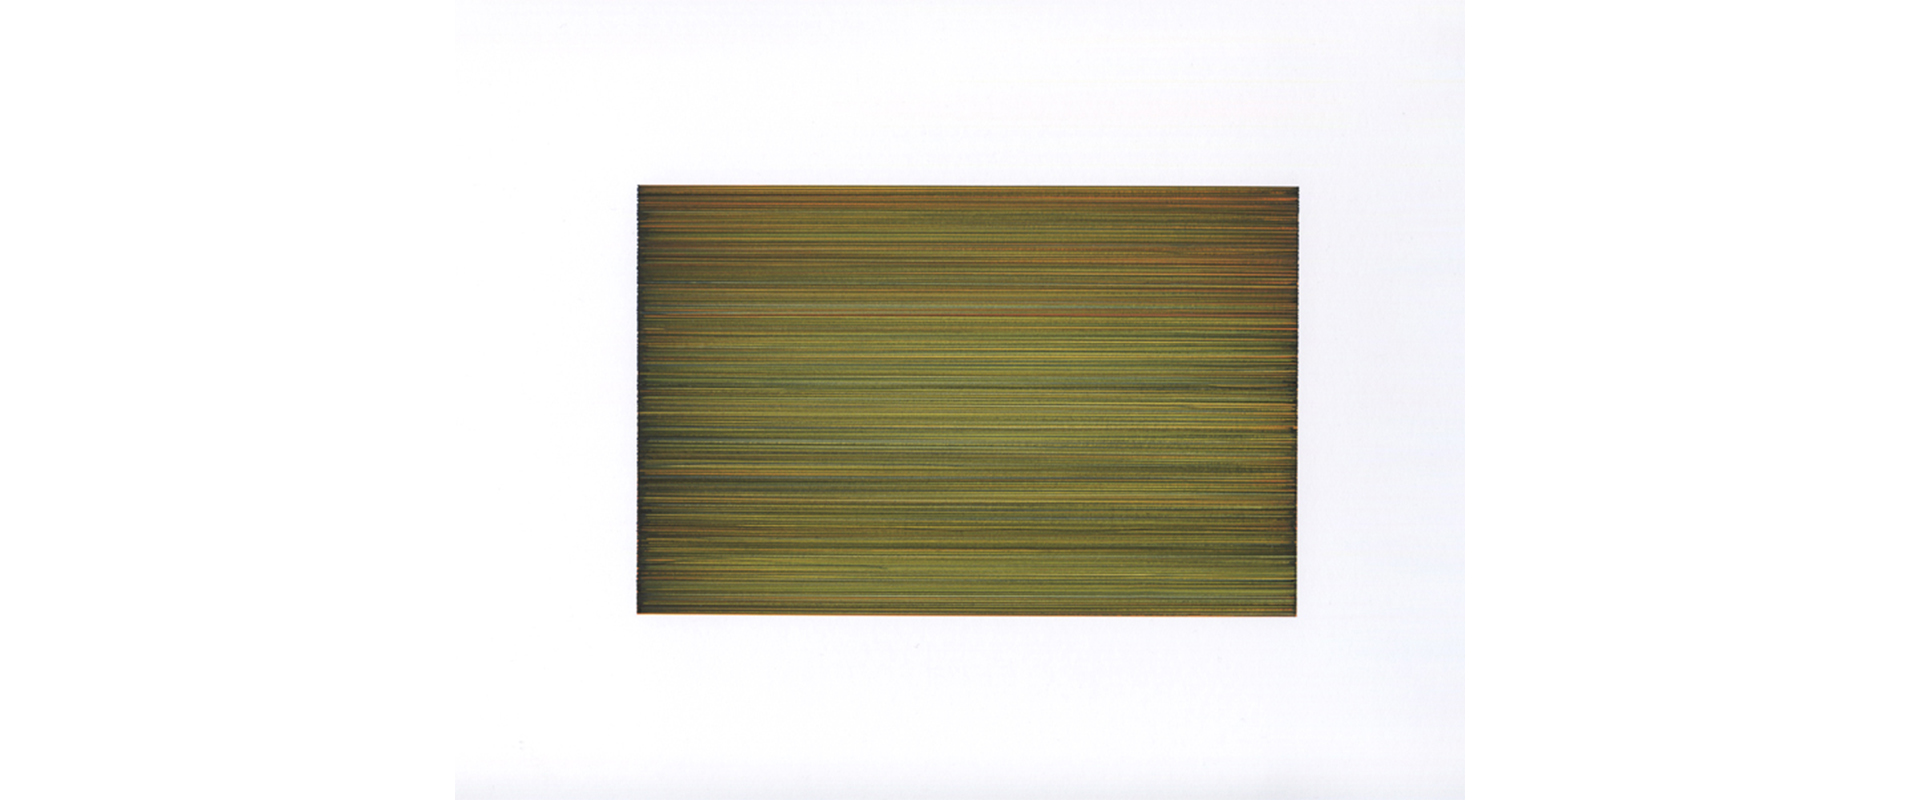 Lars Strandh, Ohne Titel (T-2016) – 2020, Farbige Tinte auf Papier, 11,5 x 17,5 cm (Blattgröße 42 x 29,7cm)